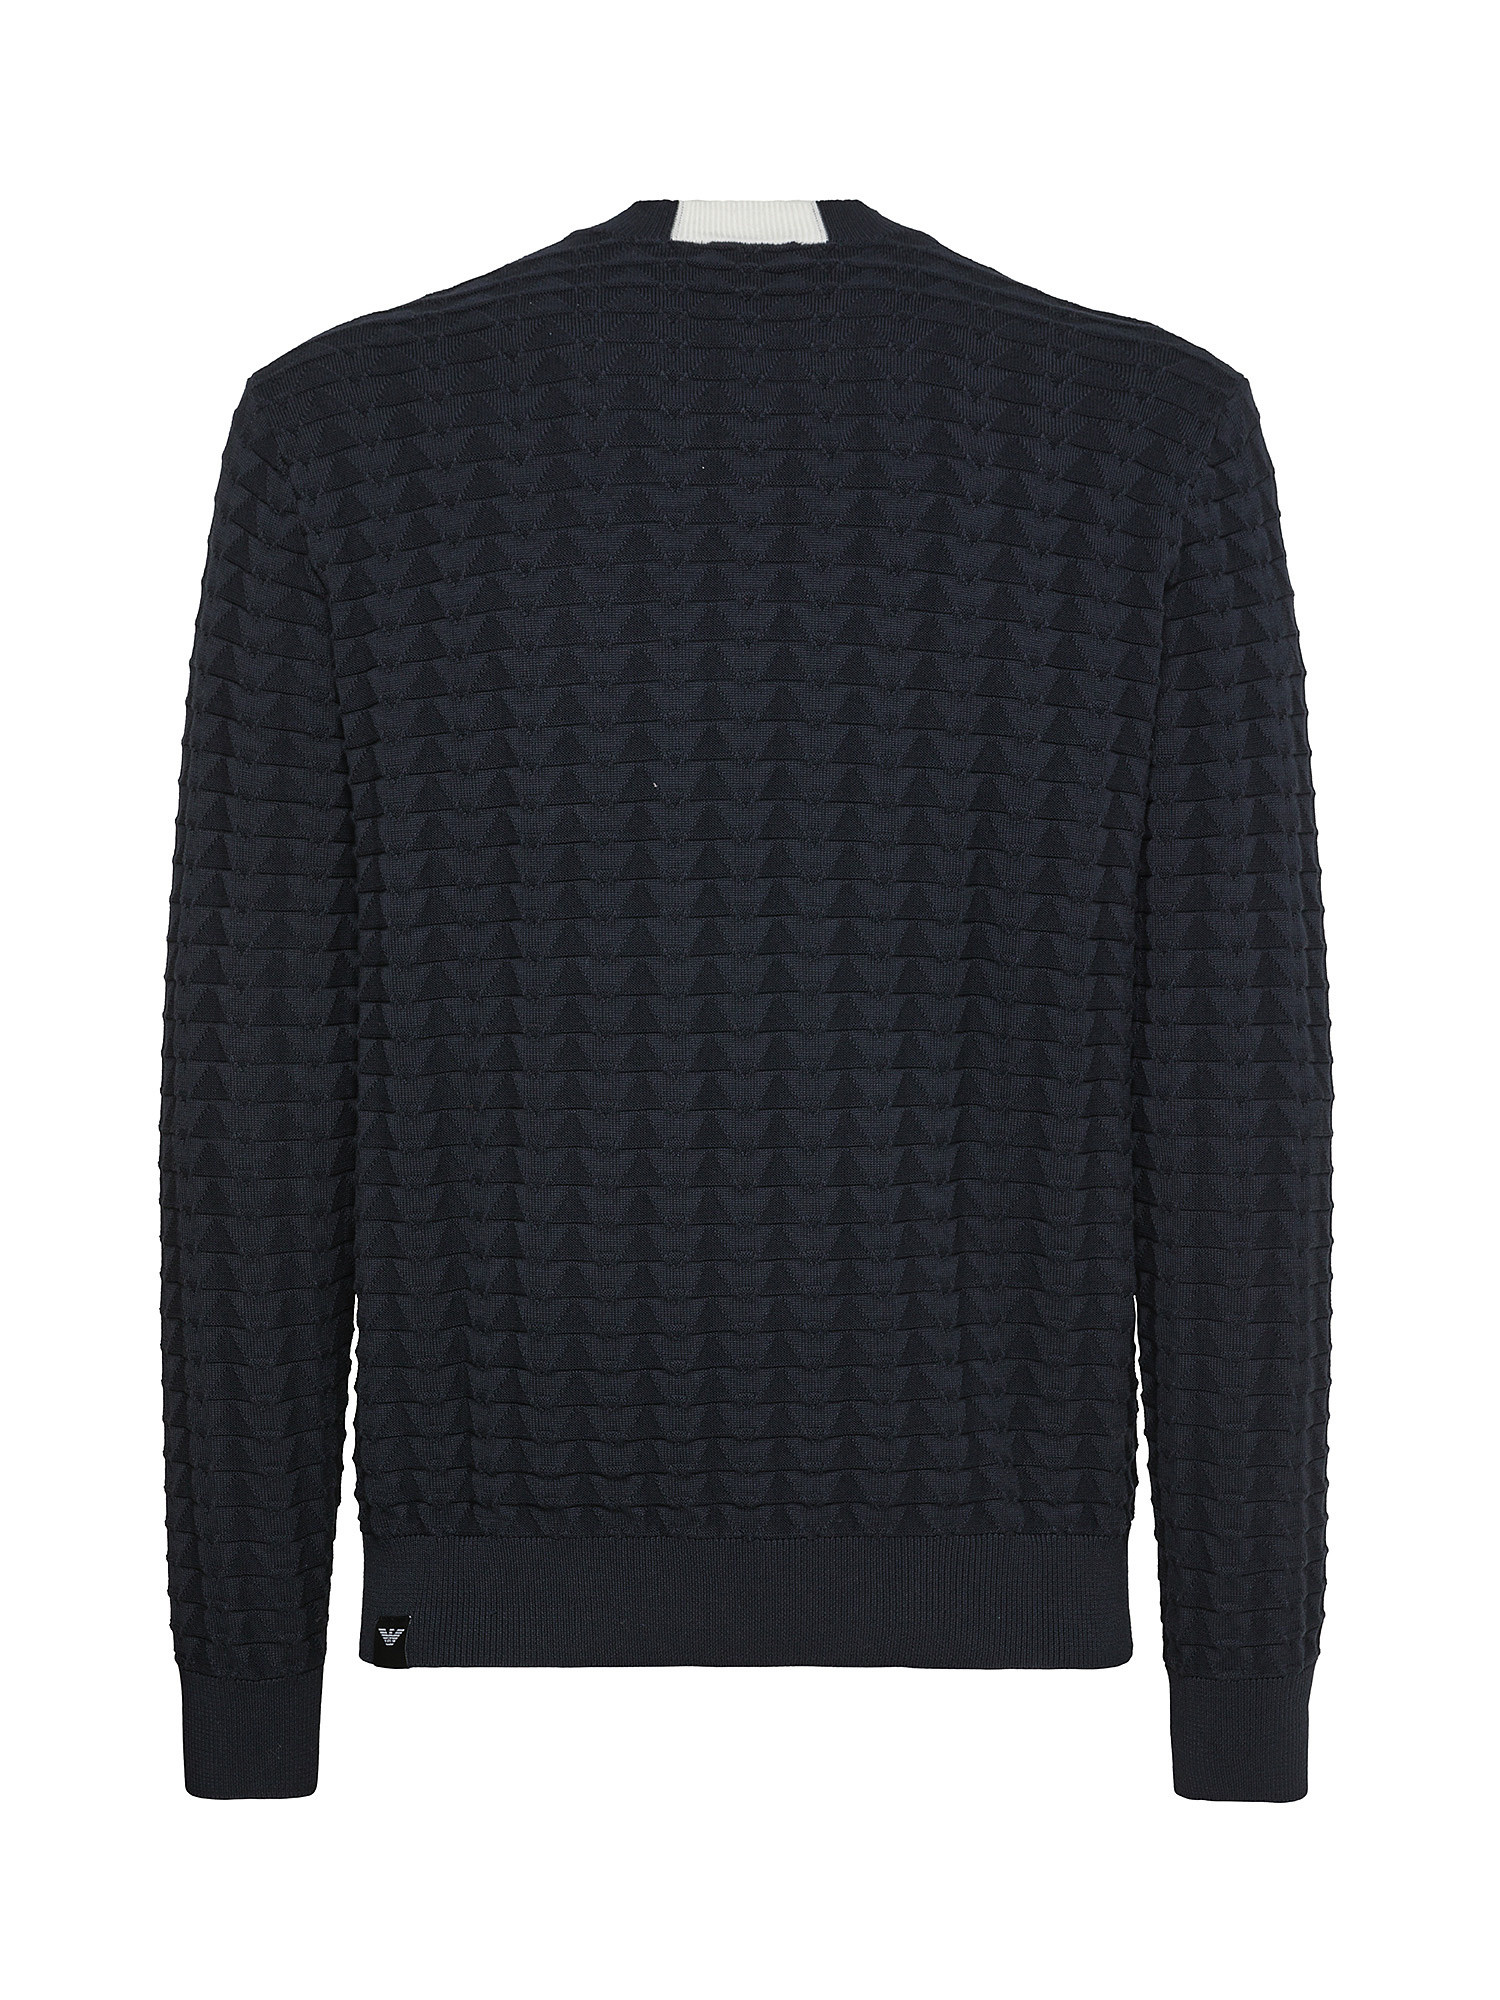 Emporio Armani - Pullover in cotone lavorato a maglia, Blu scuro, large image number 1